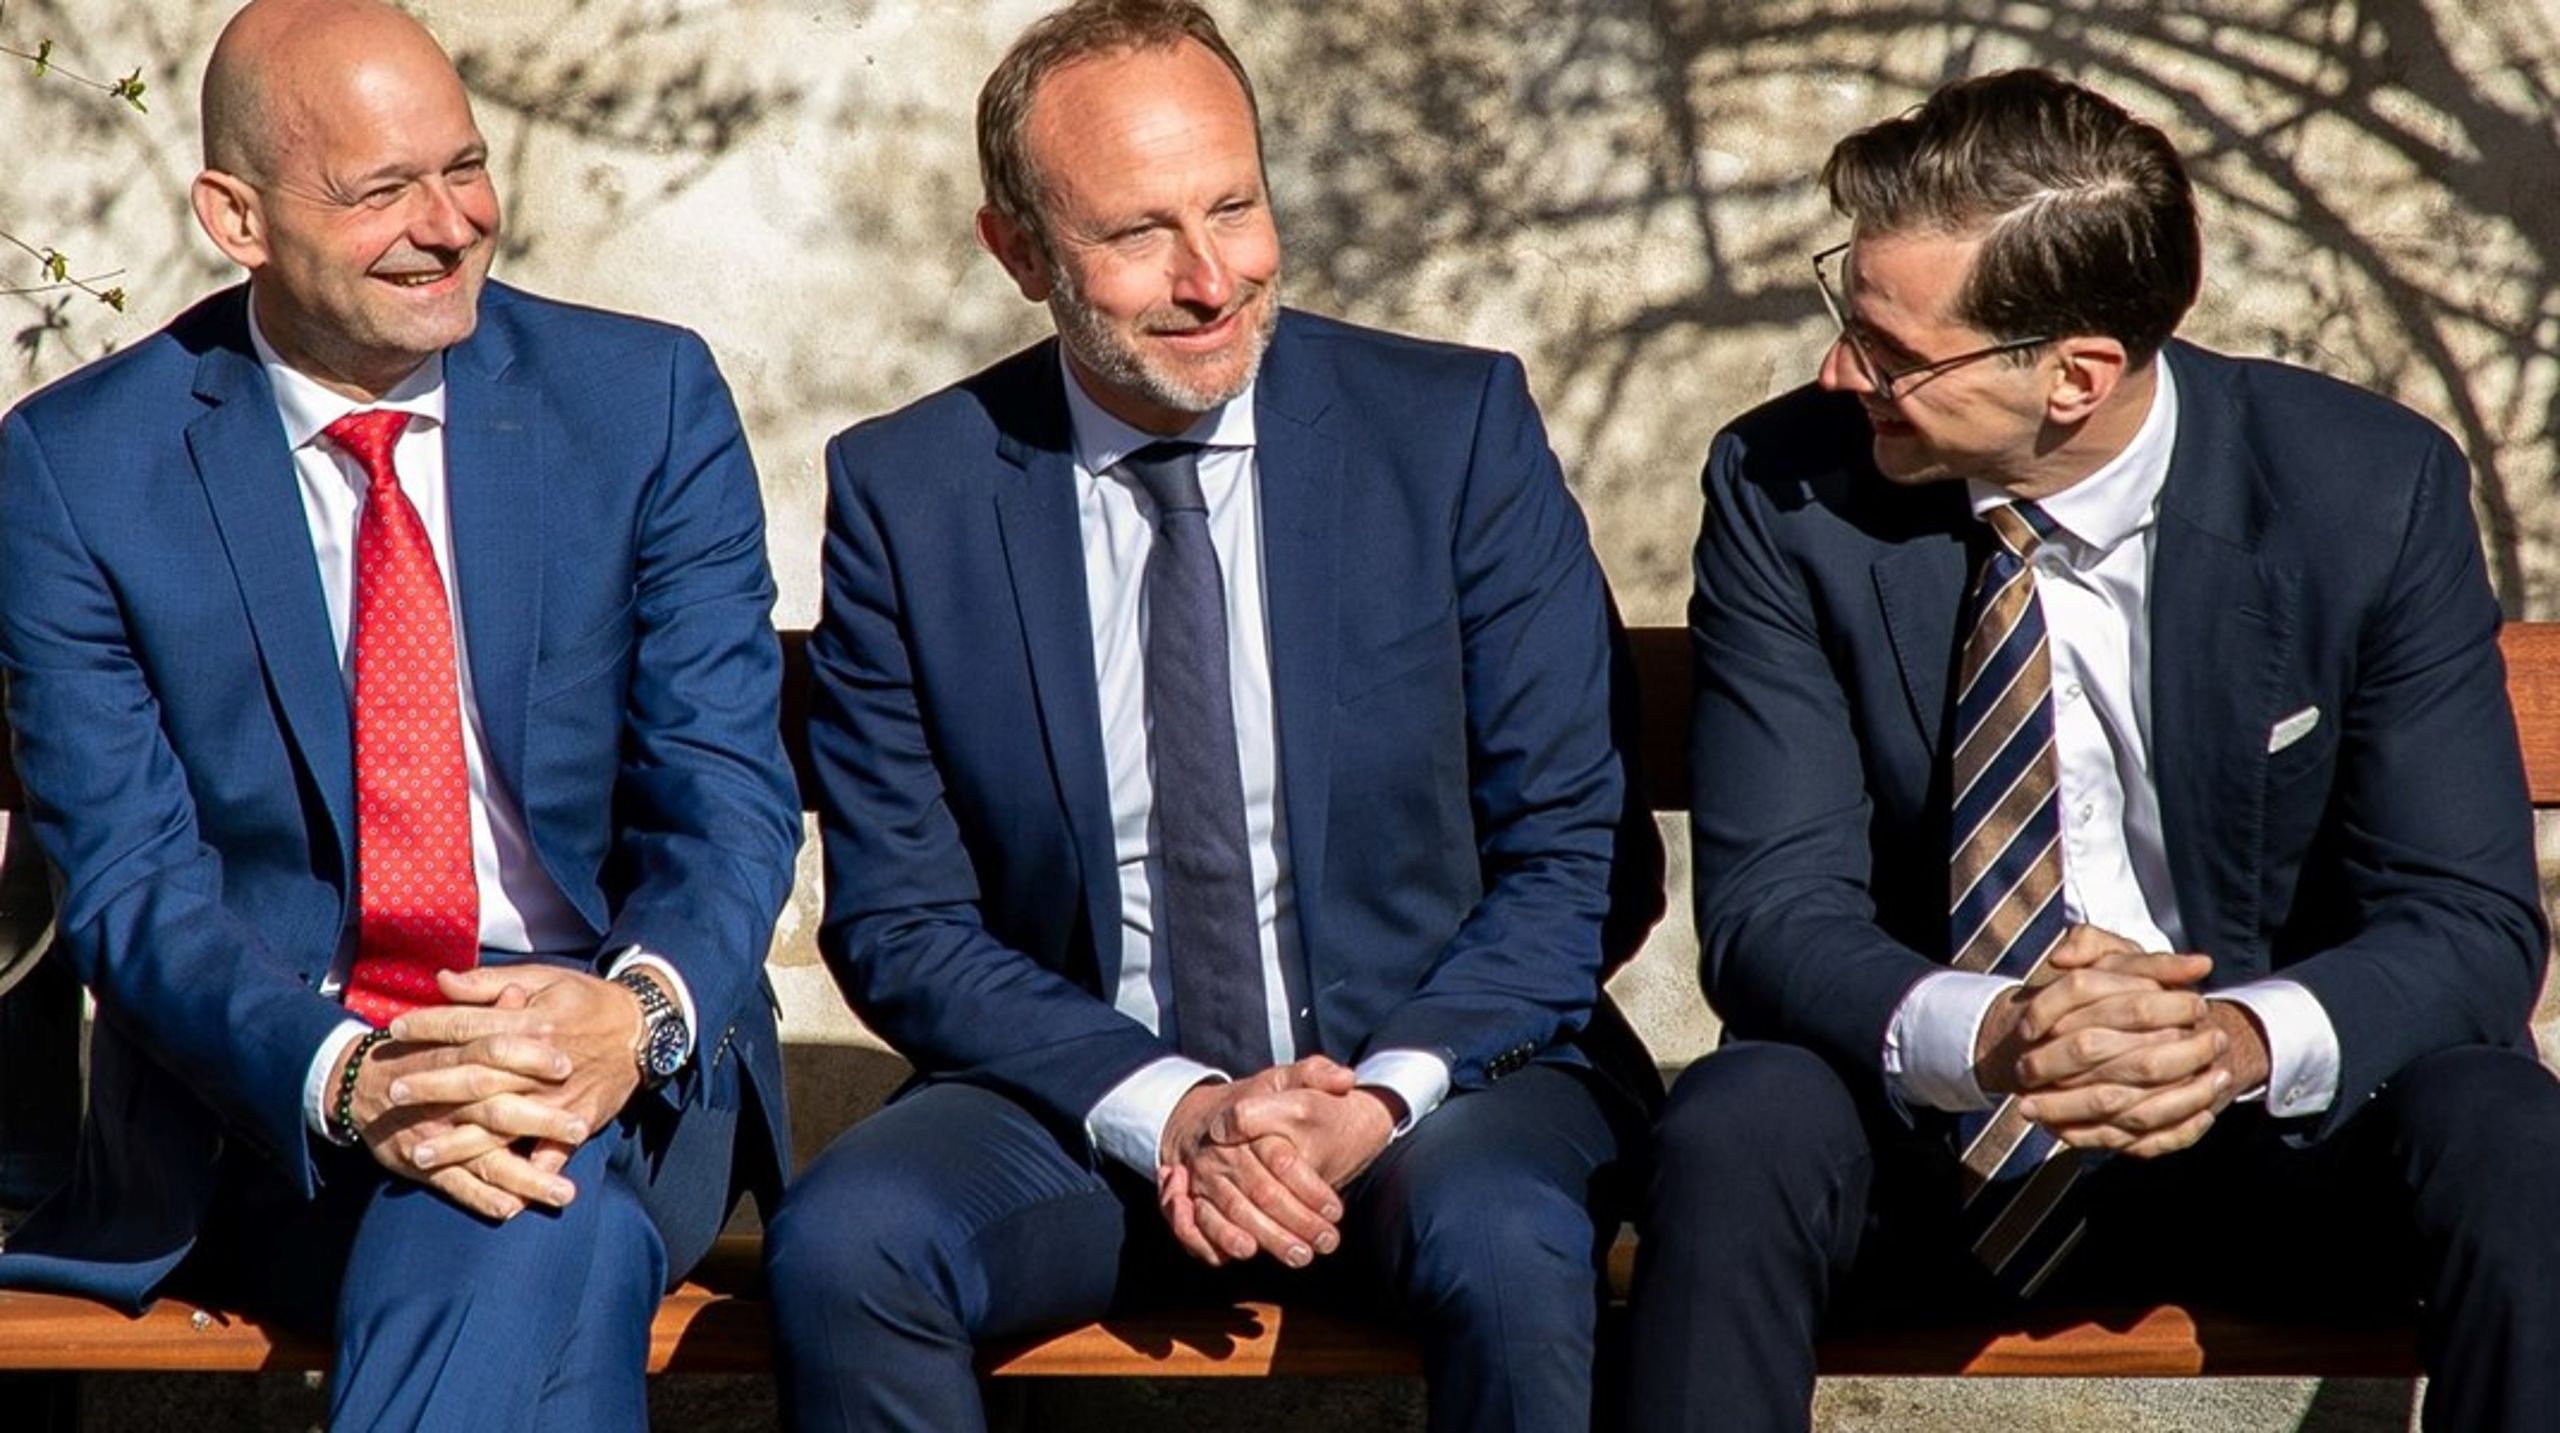 Selvom den nye KLAR-alliance er et umiddelbart politisk modsvar til SVM-regeringen, vidner det også om nogle dybereliggende forandringer i dansk politik, skriver Christian Egander Skov.